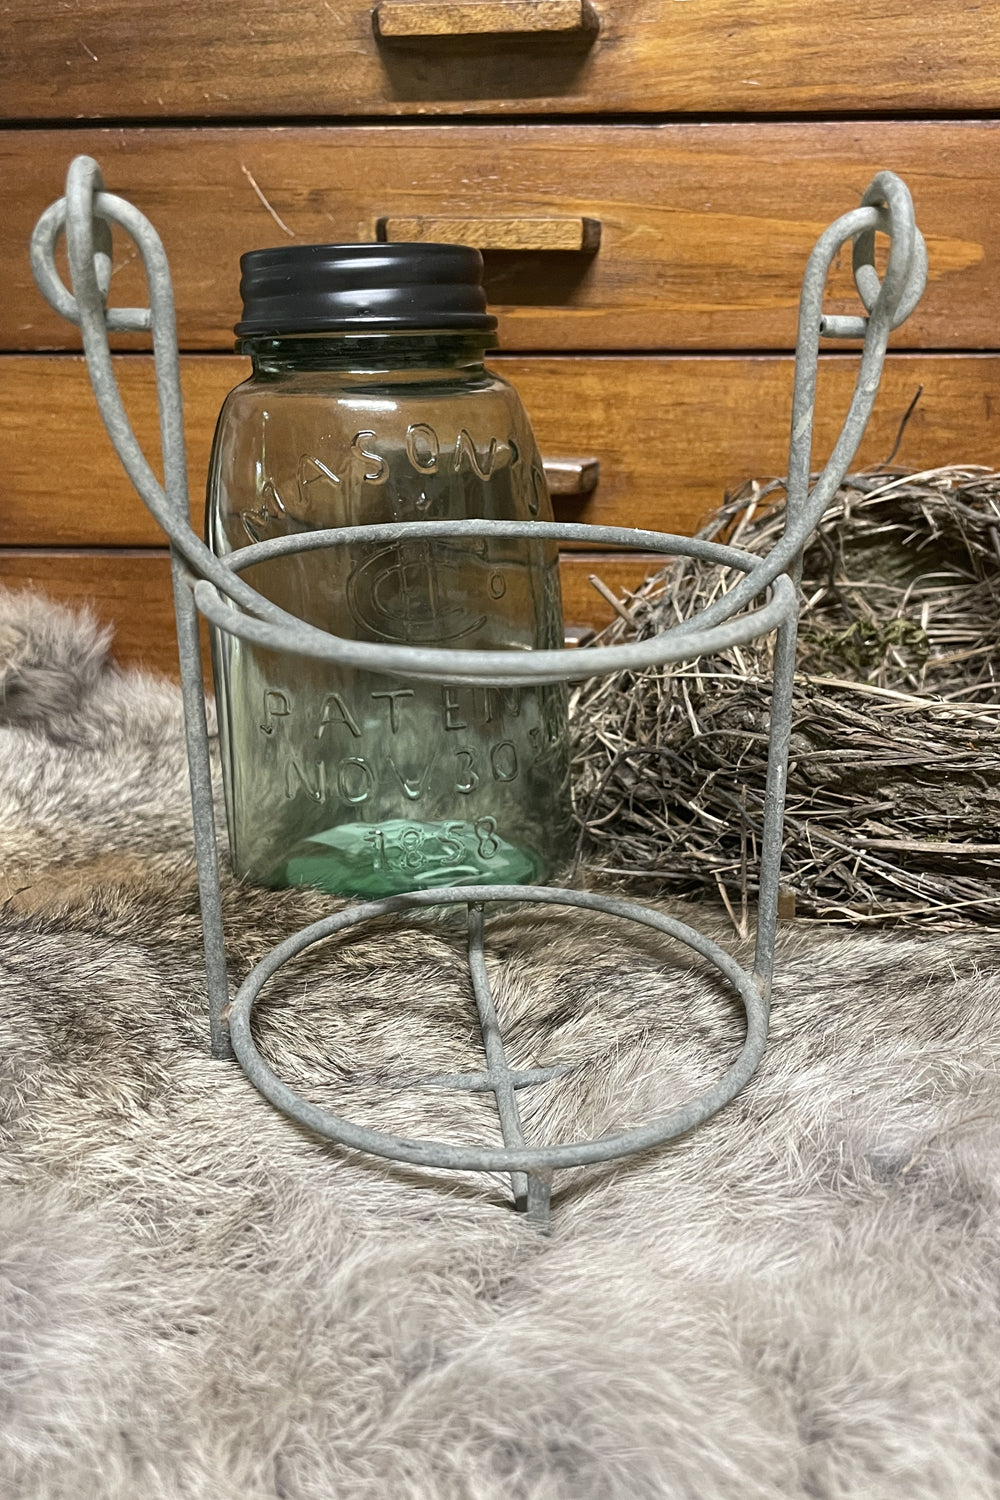 midget mason jar with galvanized wire caddy